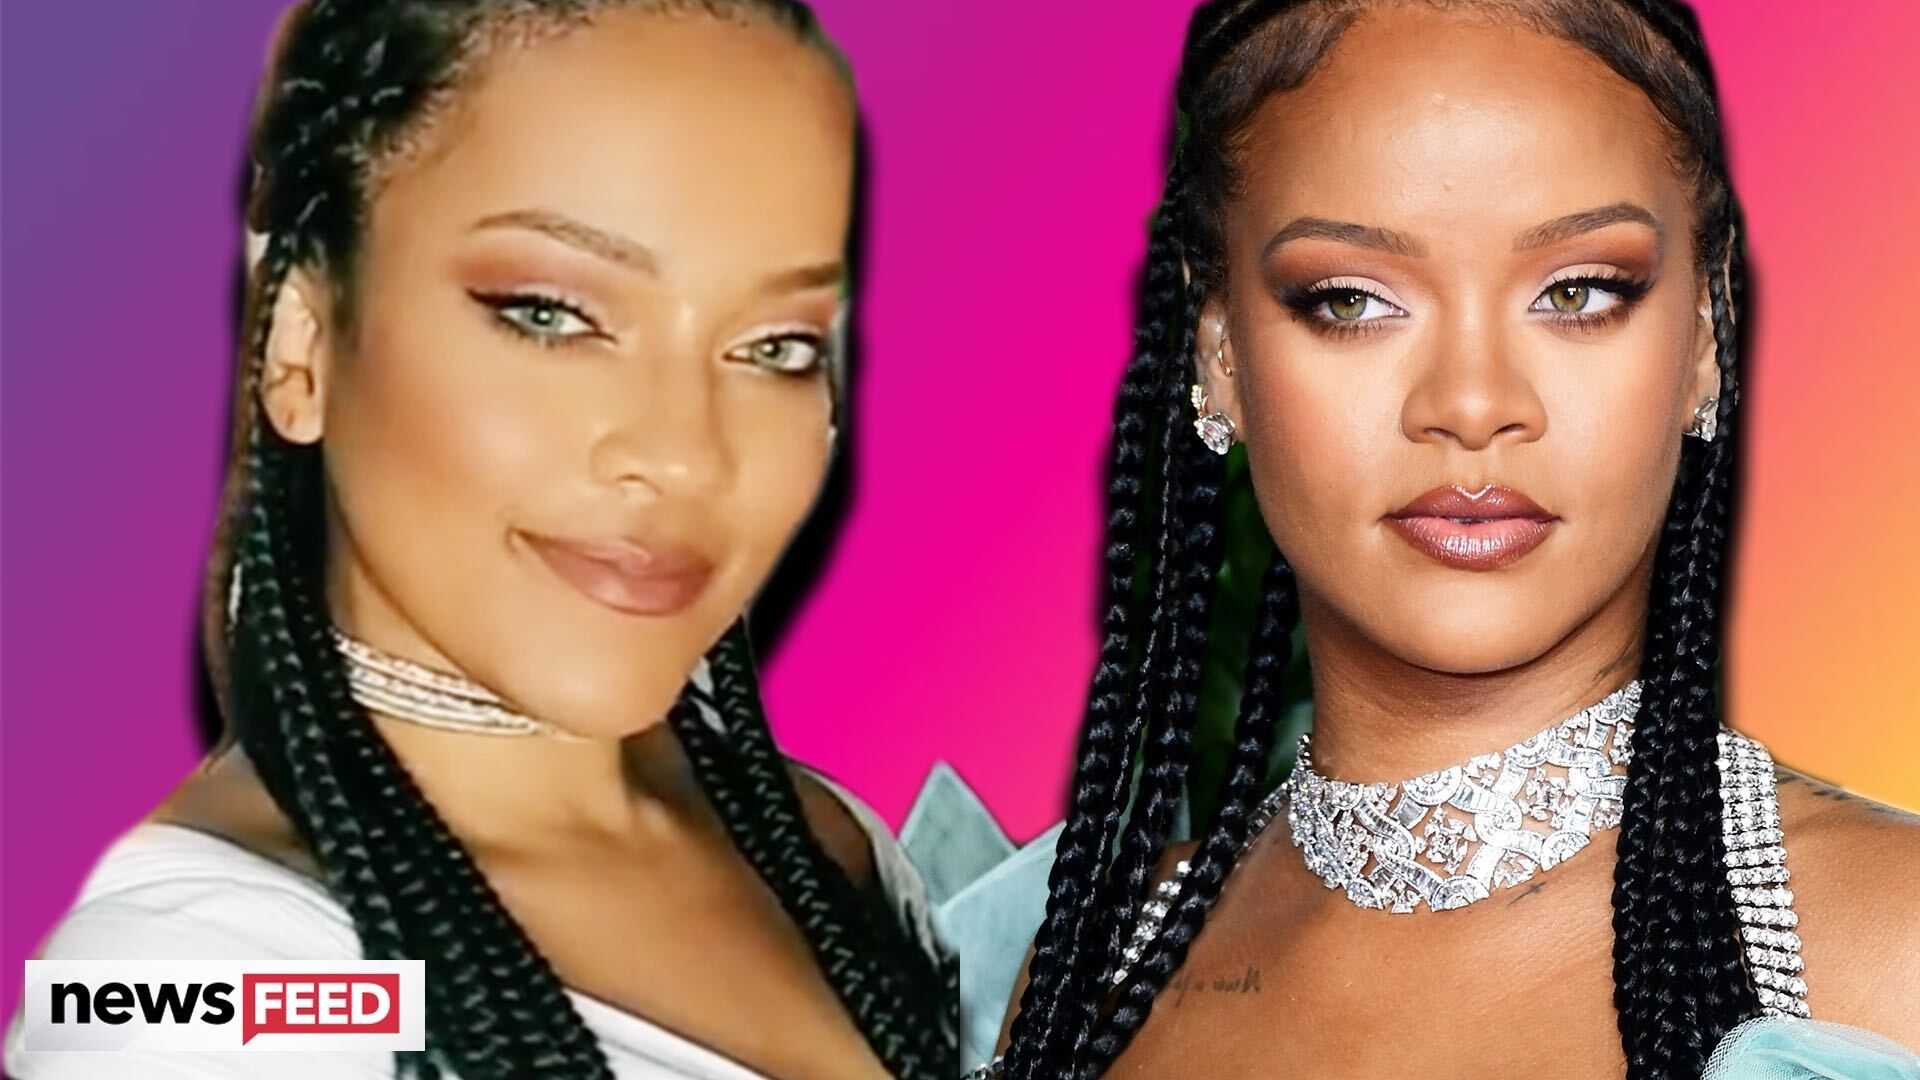 Rihanna Look Alike Xxx - Rihanna Has a TikTok Lookalike Named Priscilla Beatrice